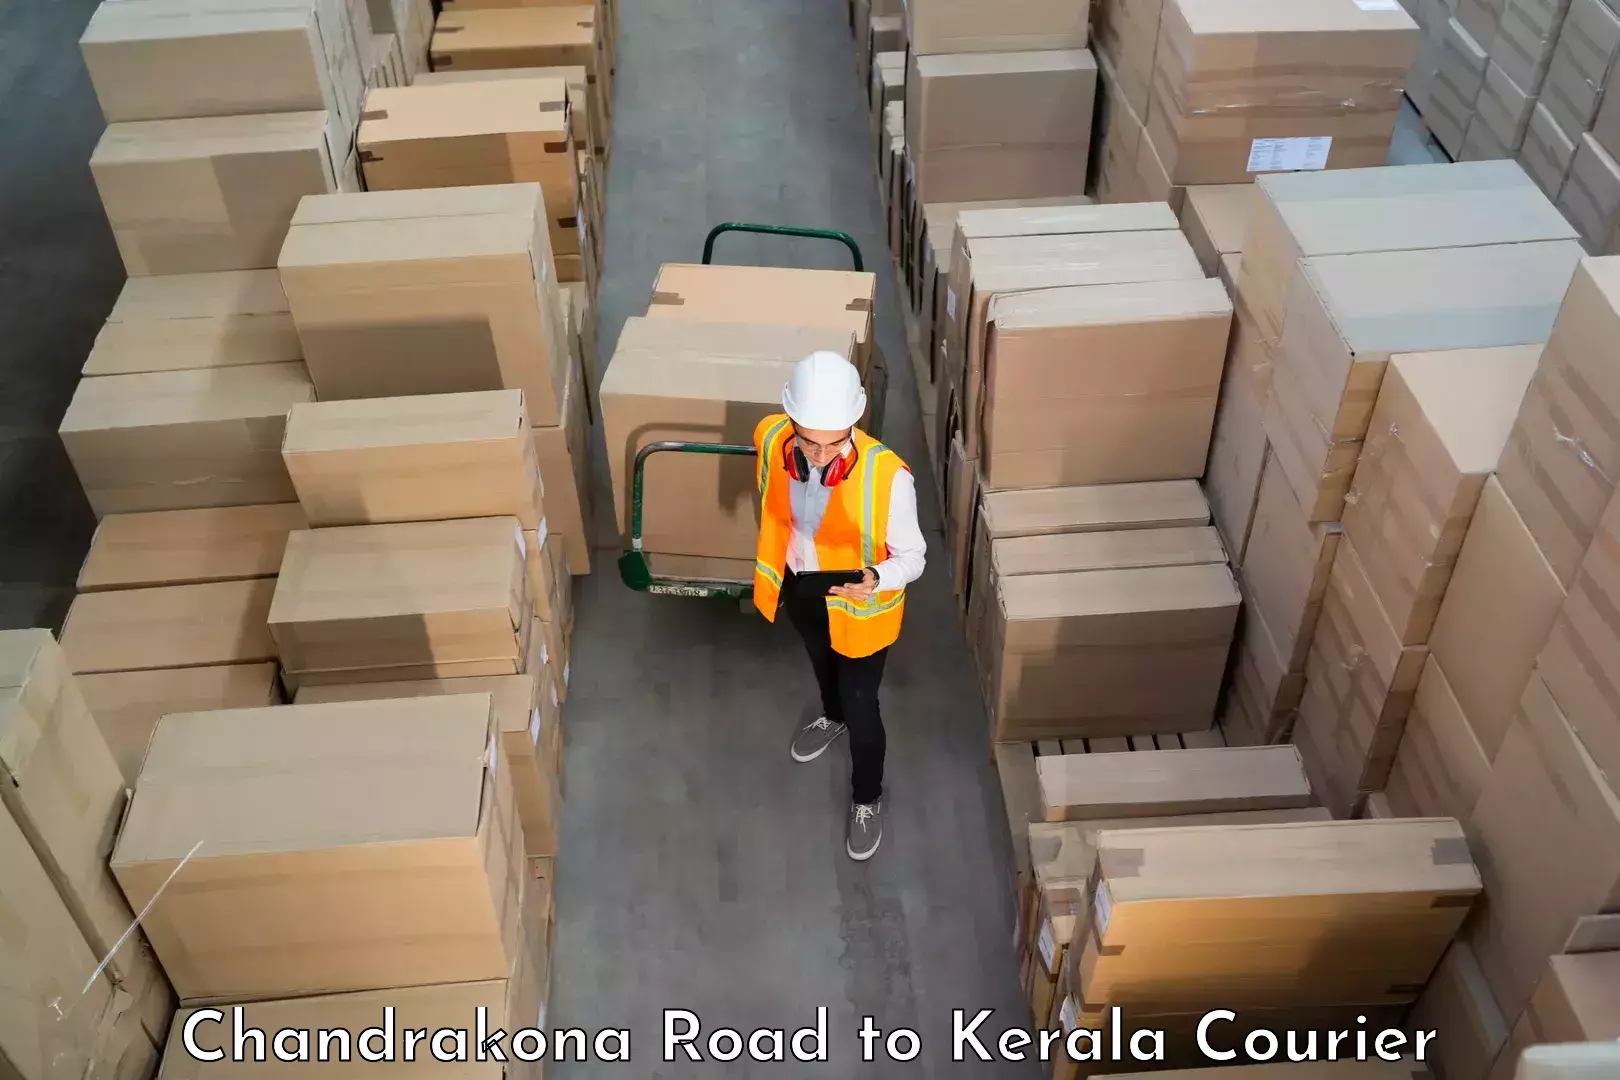 Professional moving company Chandrakona Road to Ramankary